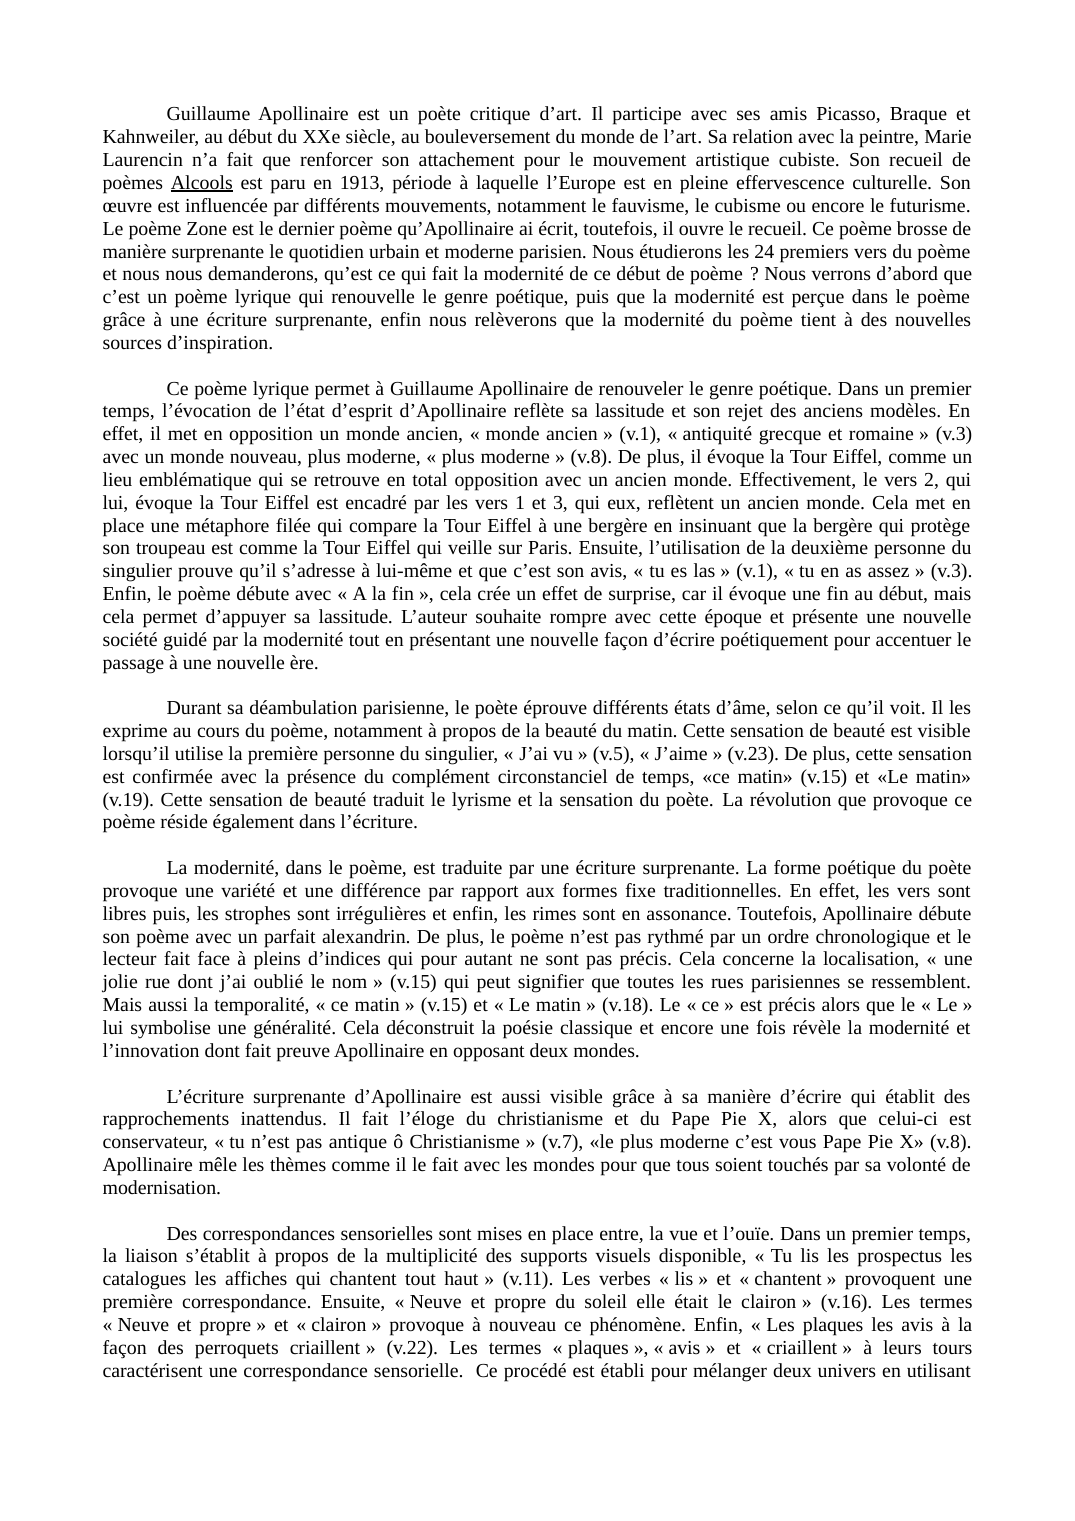 Prévisualisation du document Commentaire du poème "Zone", tiré du recueil Alcools de Guillaume Apollinaire